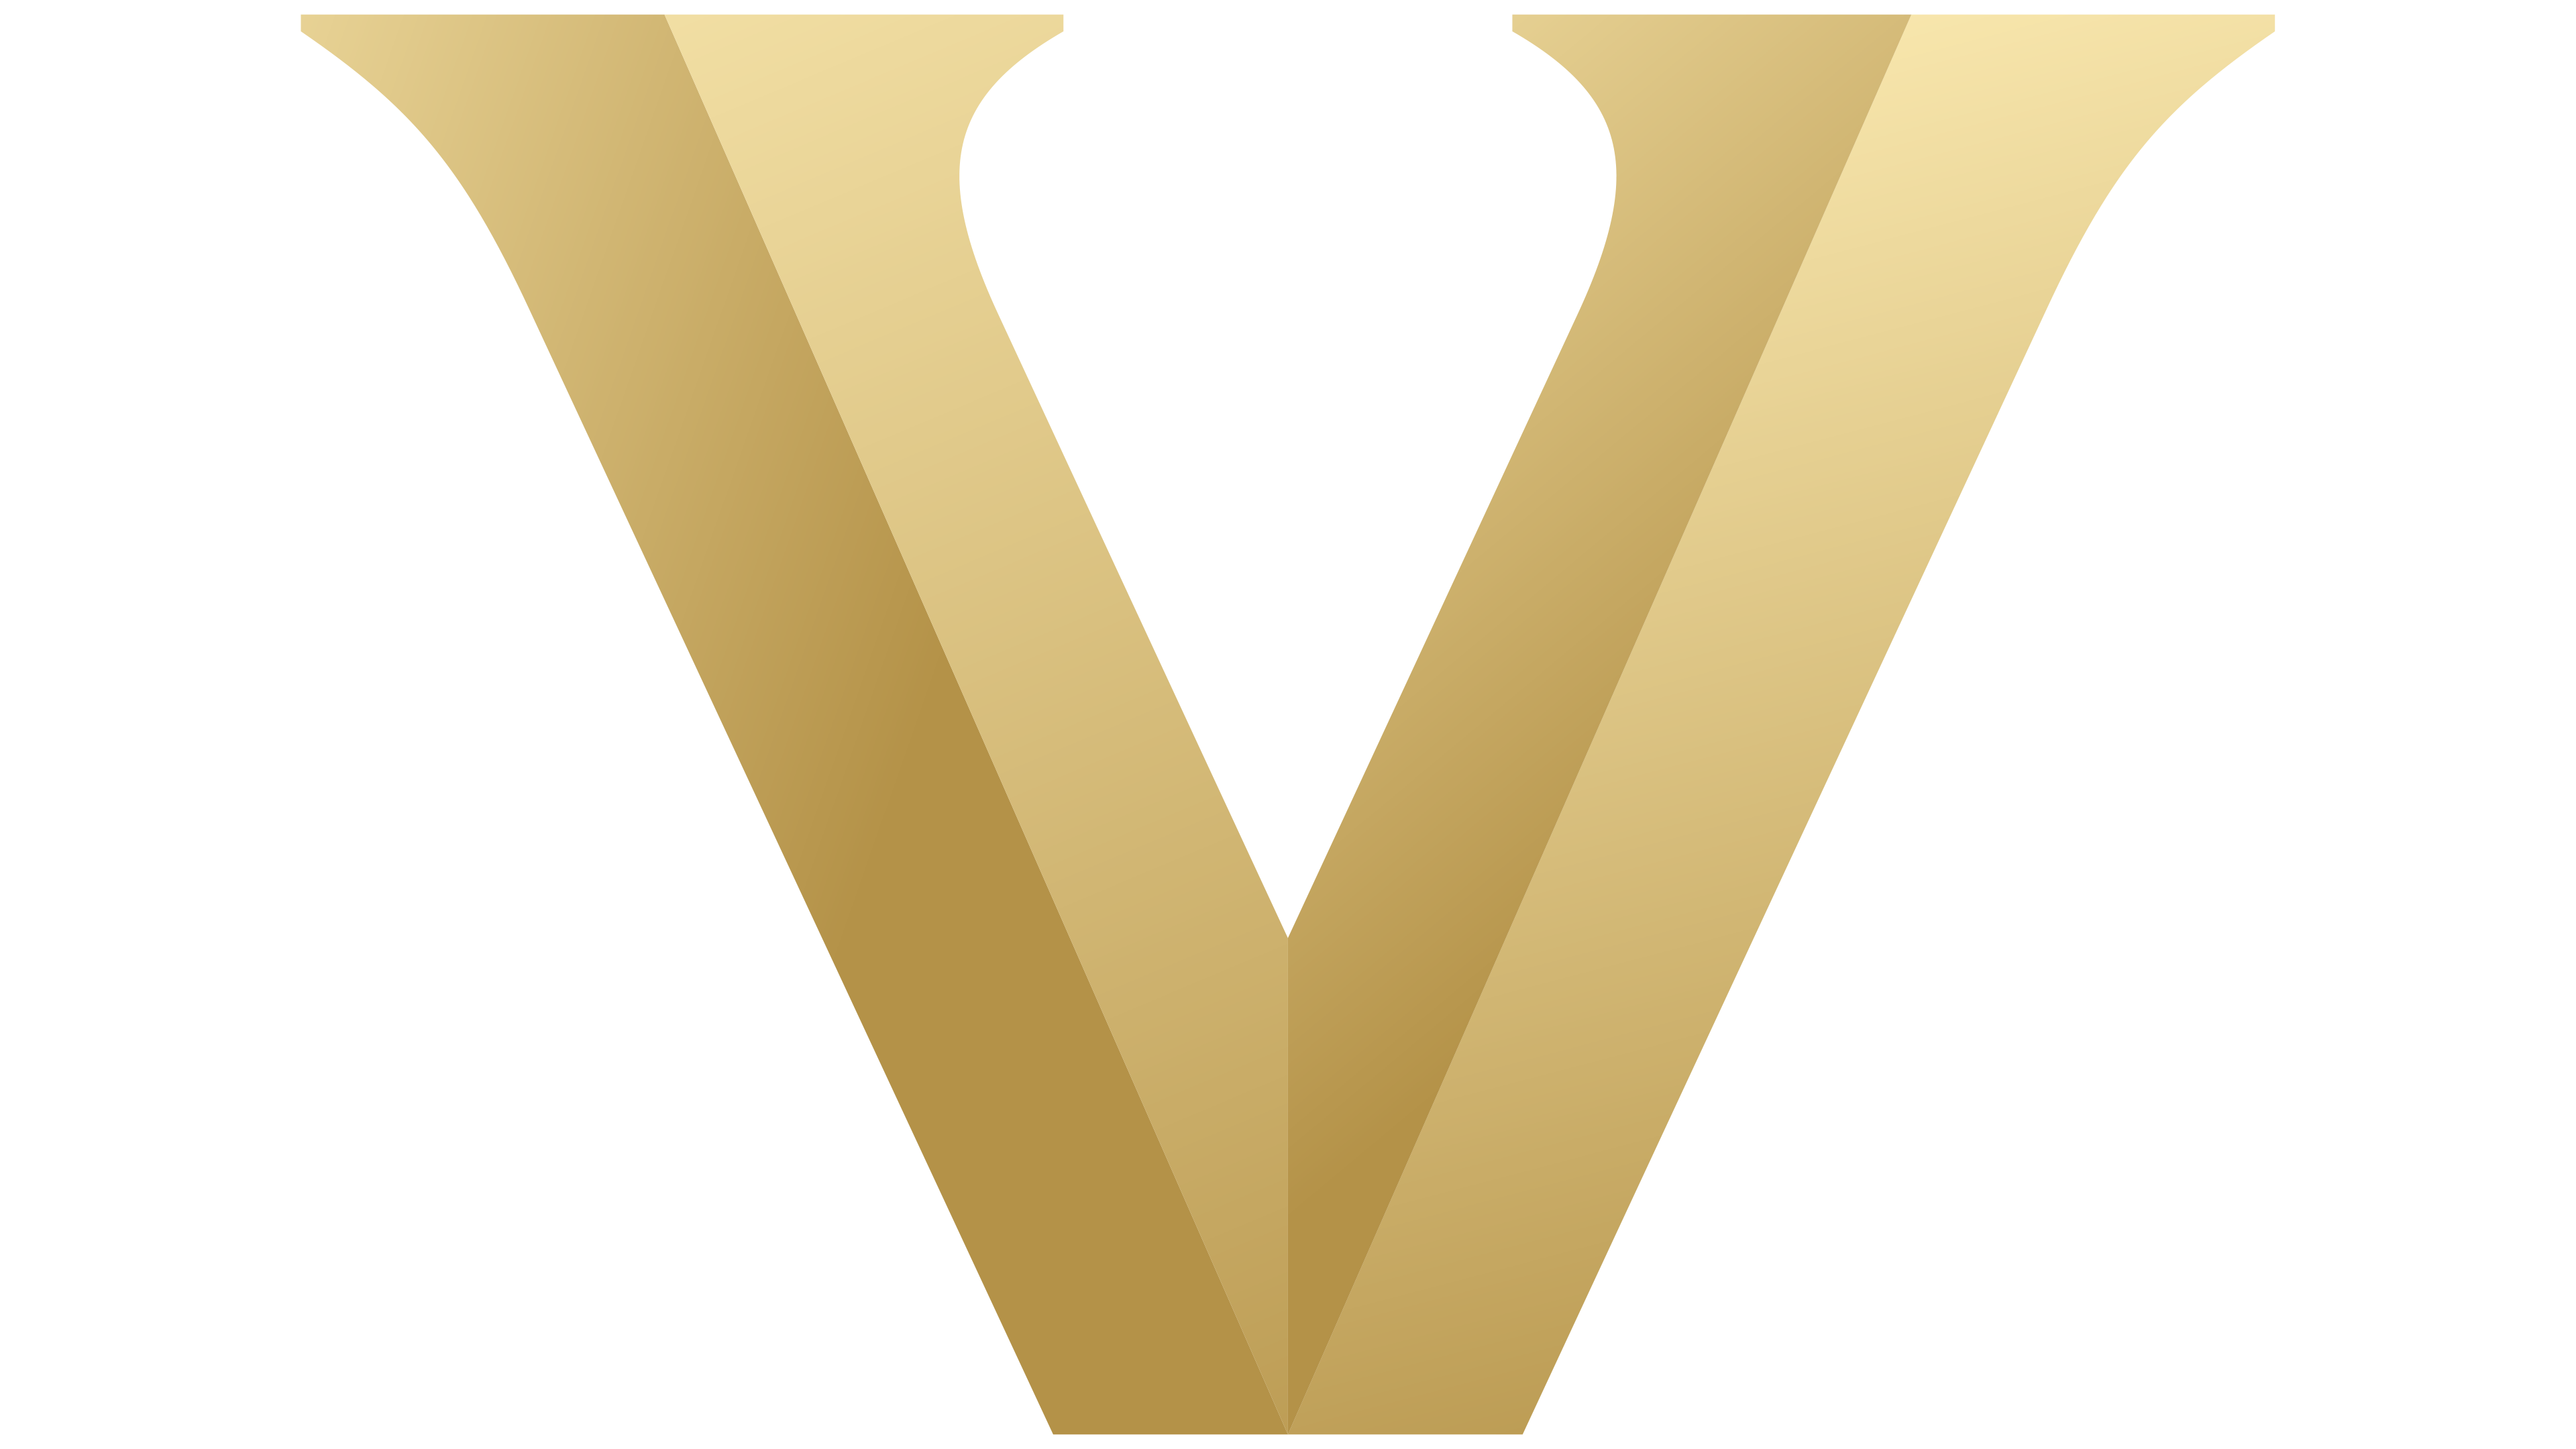 vanderbilt university logo vector